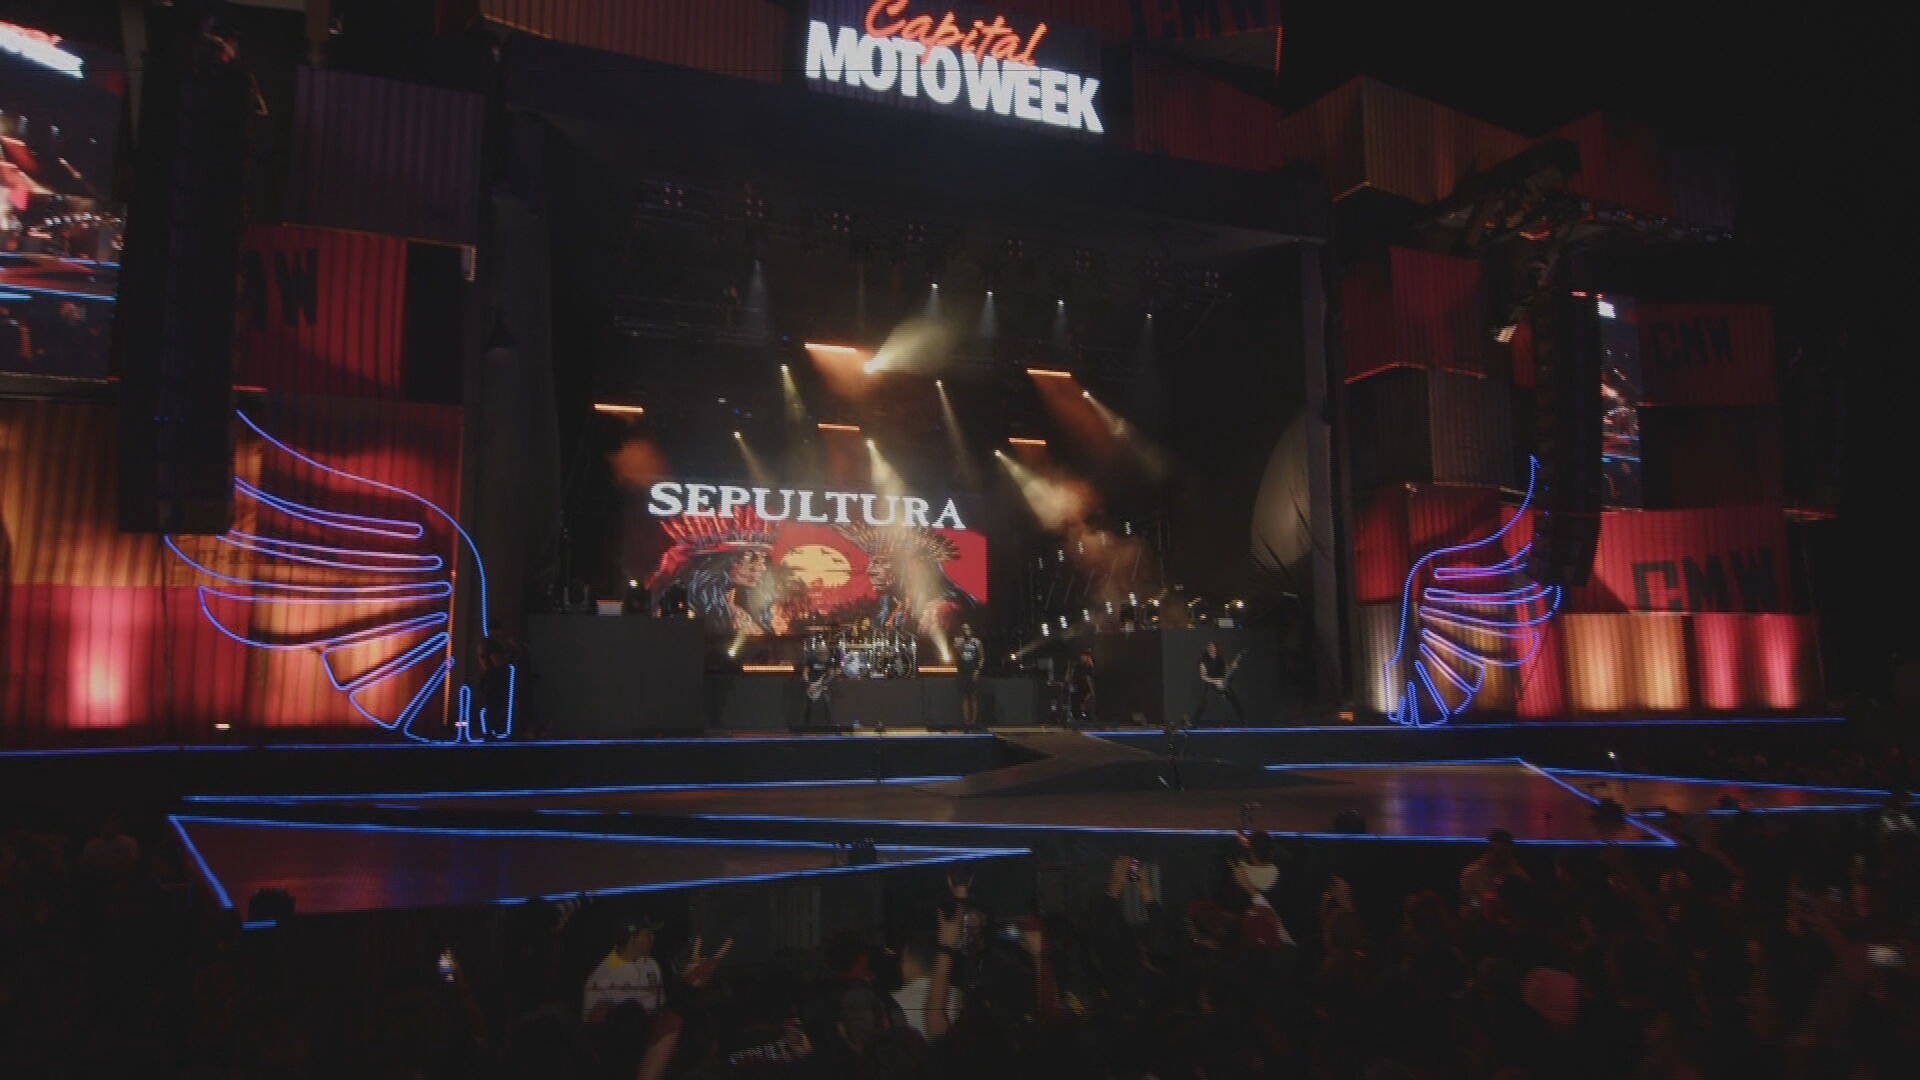 Capital Moto Week: Sepultura e Massacration foram as principais atrações da quarta noite do festival